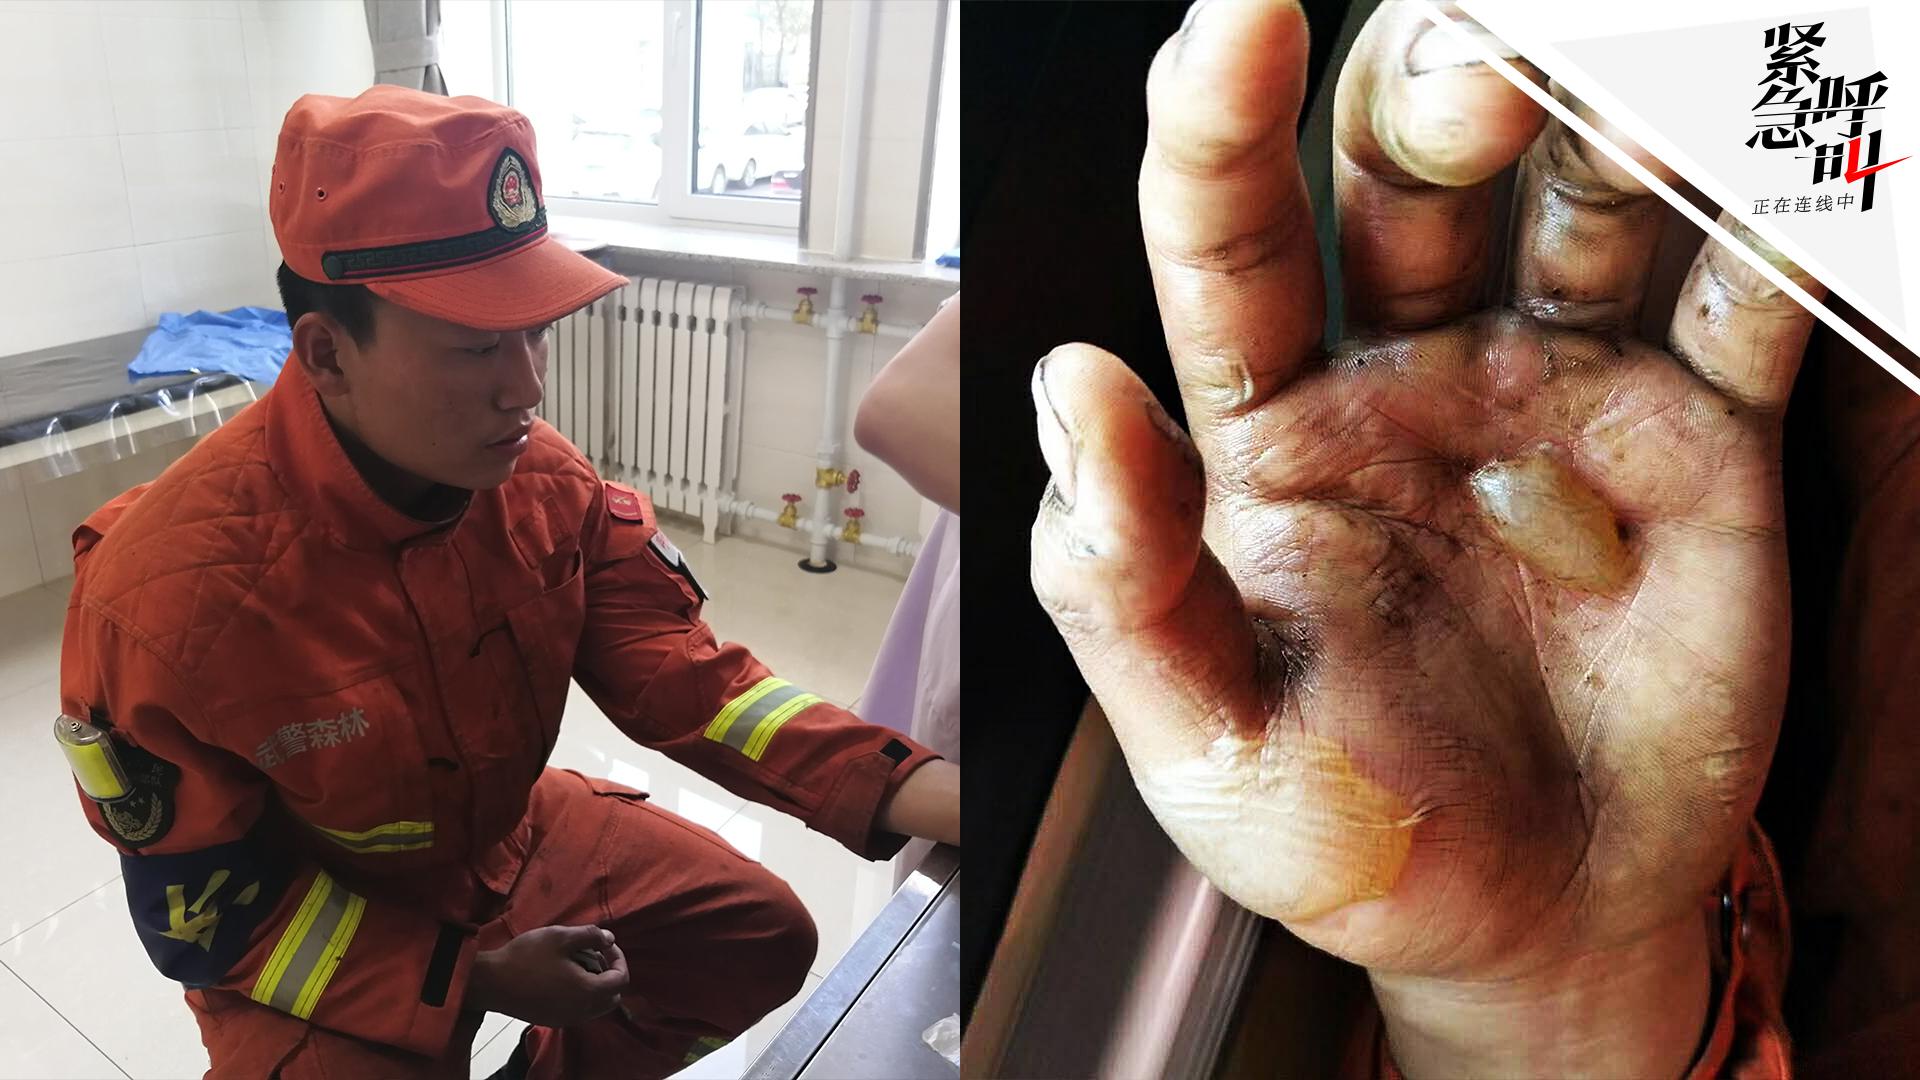 消防战士烧伤的手图片